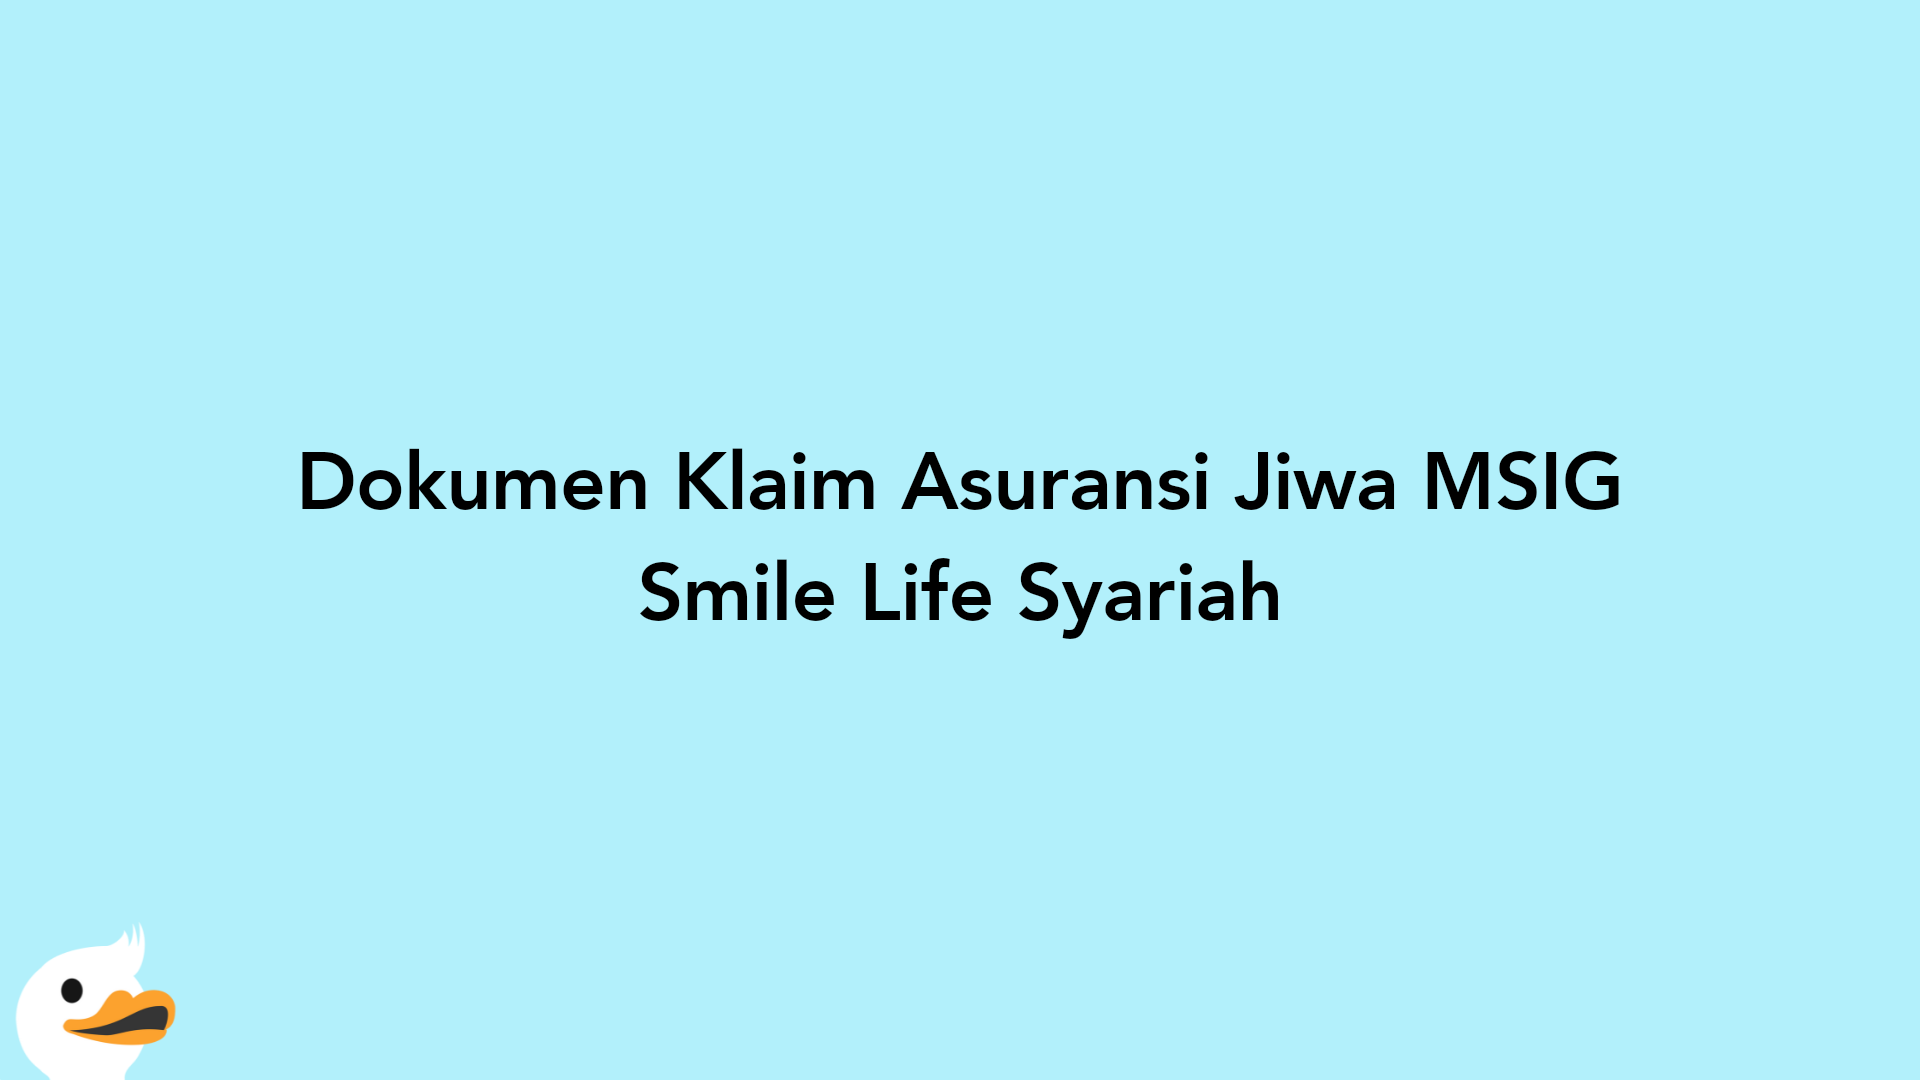 Dokumen Klaim Asuransi Jiwa MSIG Smile Life Syariah